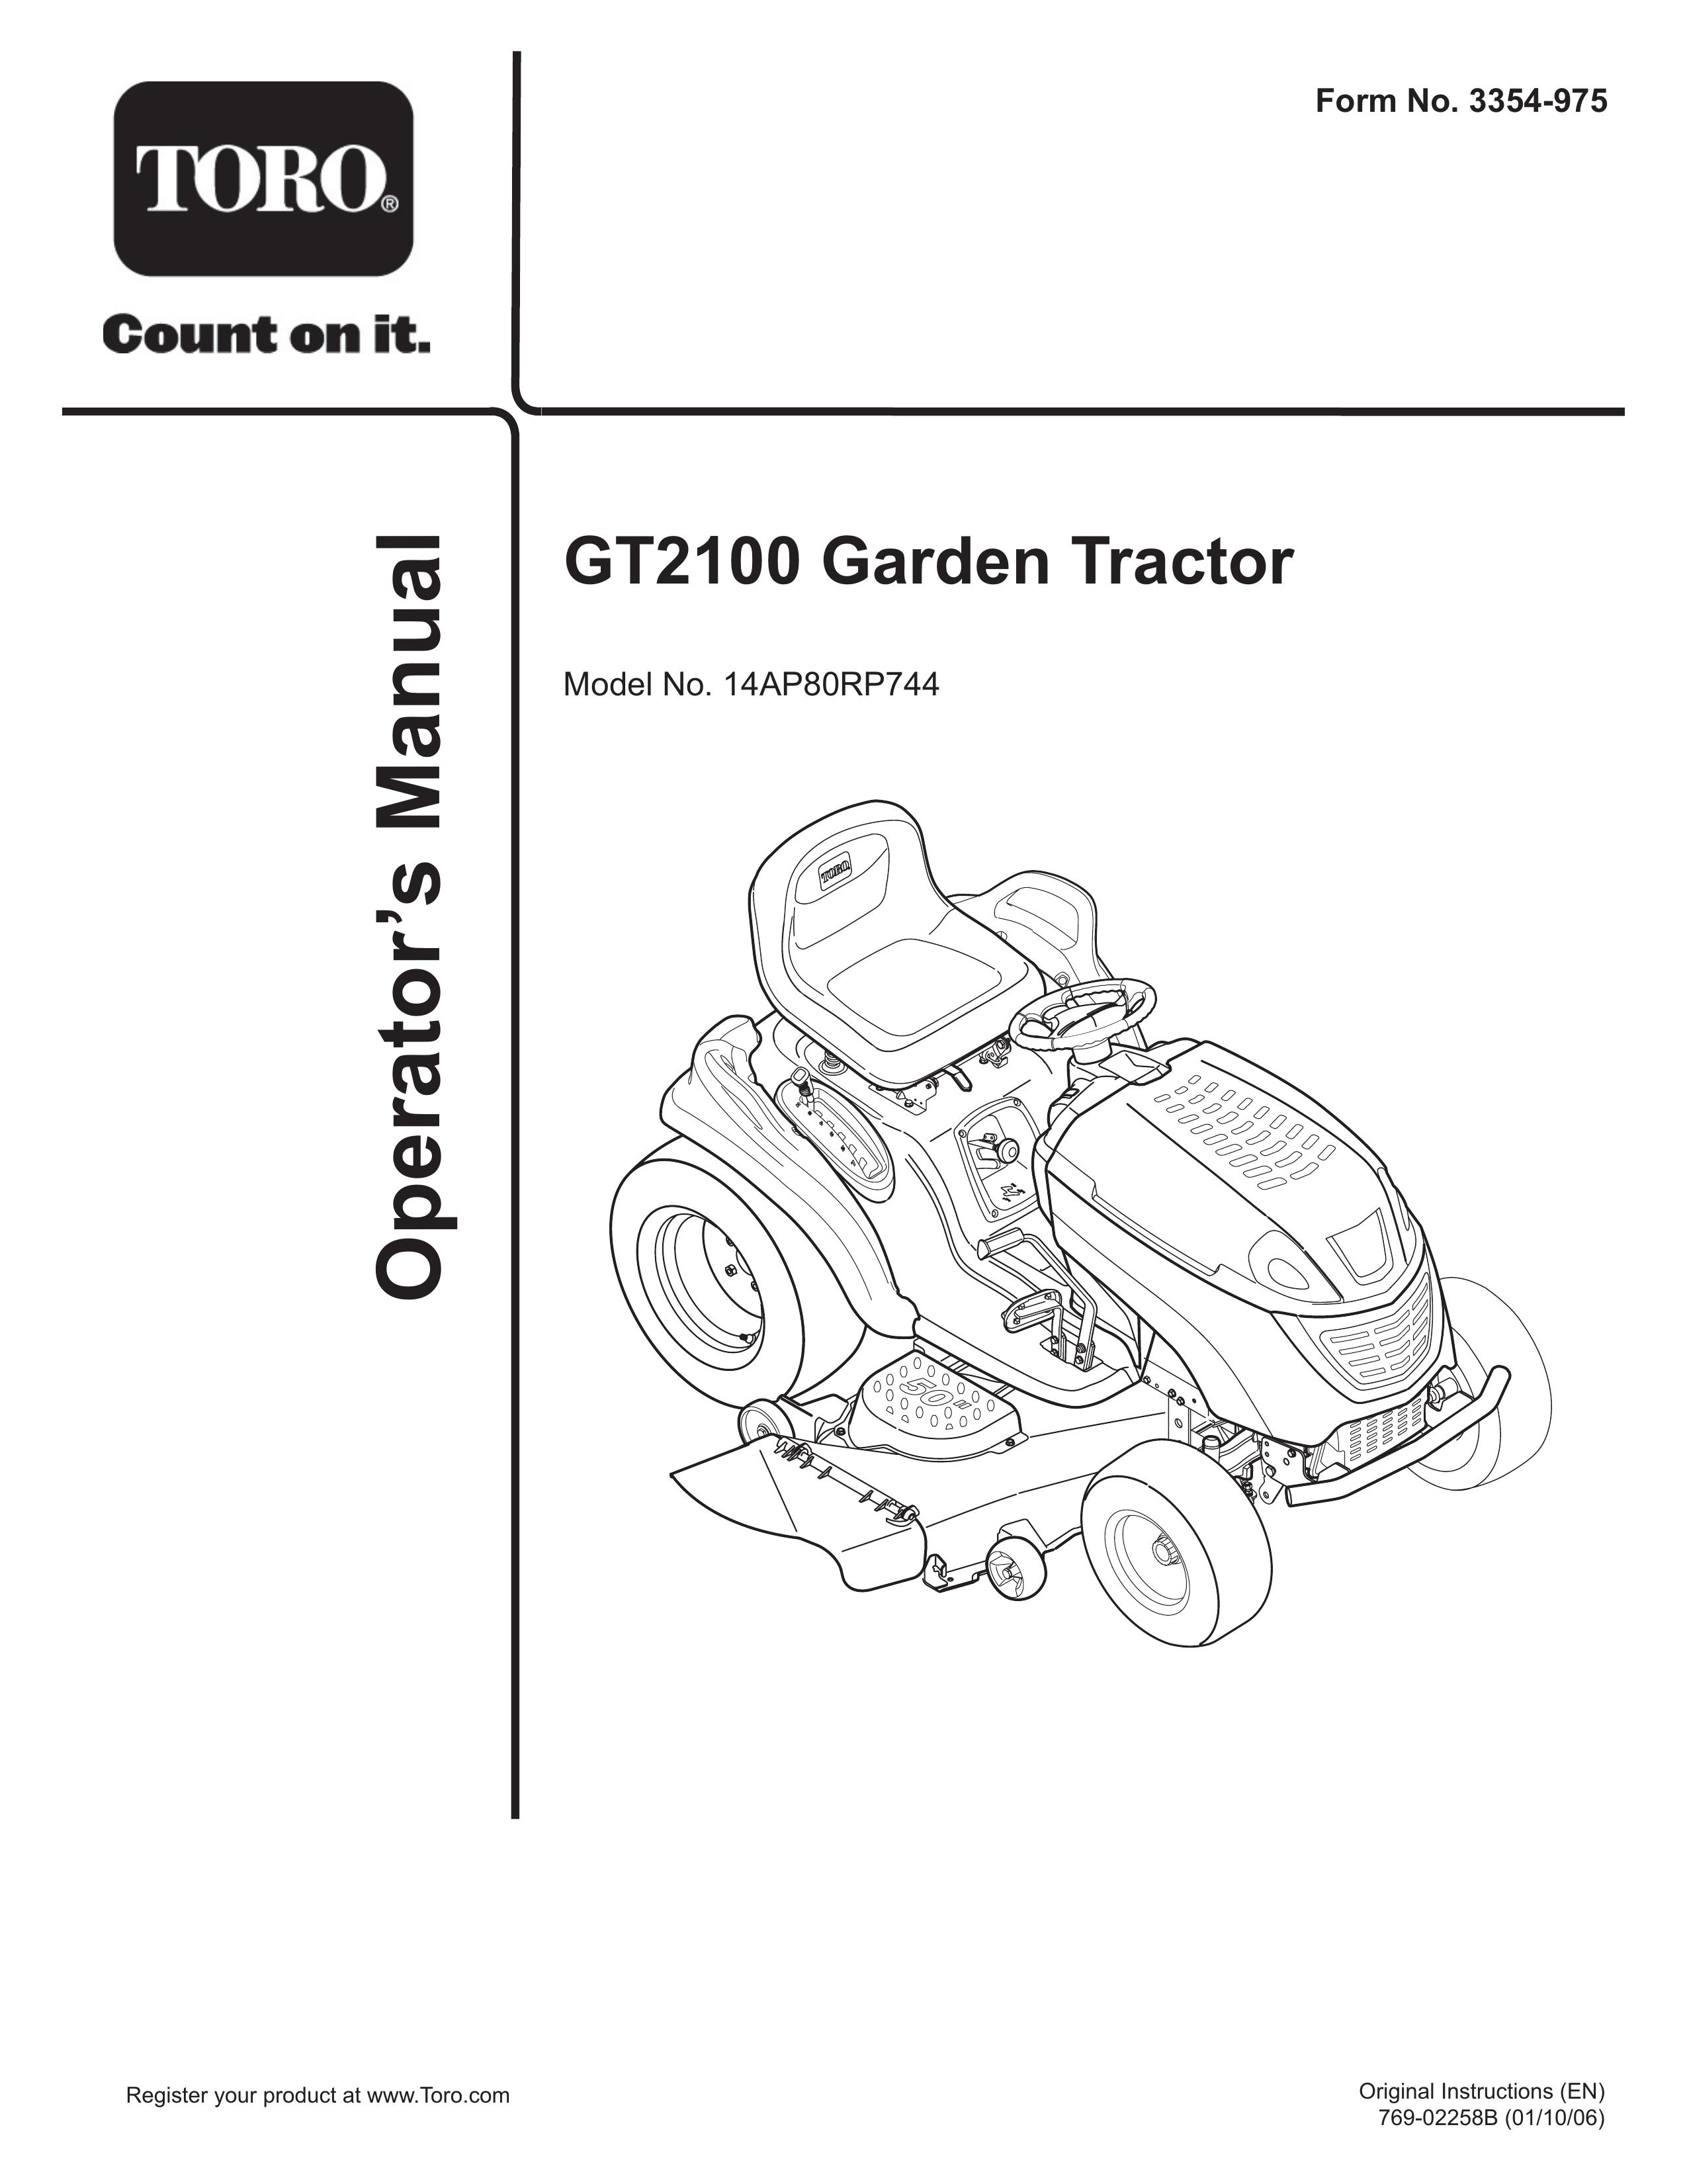 Toro 14AP80RP744 Lawn Mower User Manual